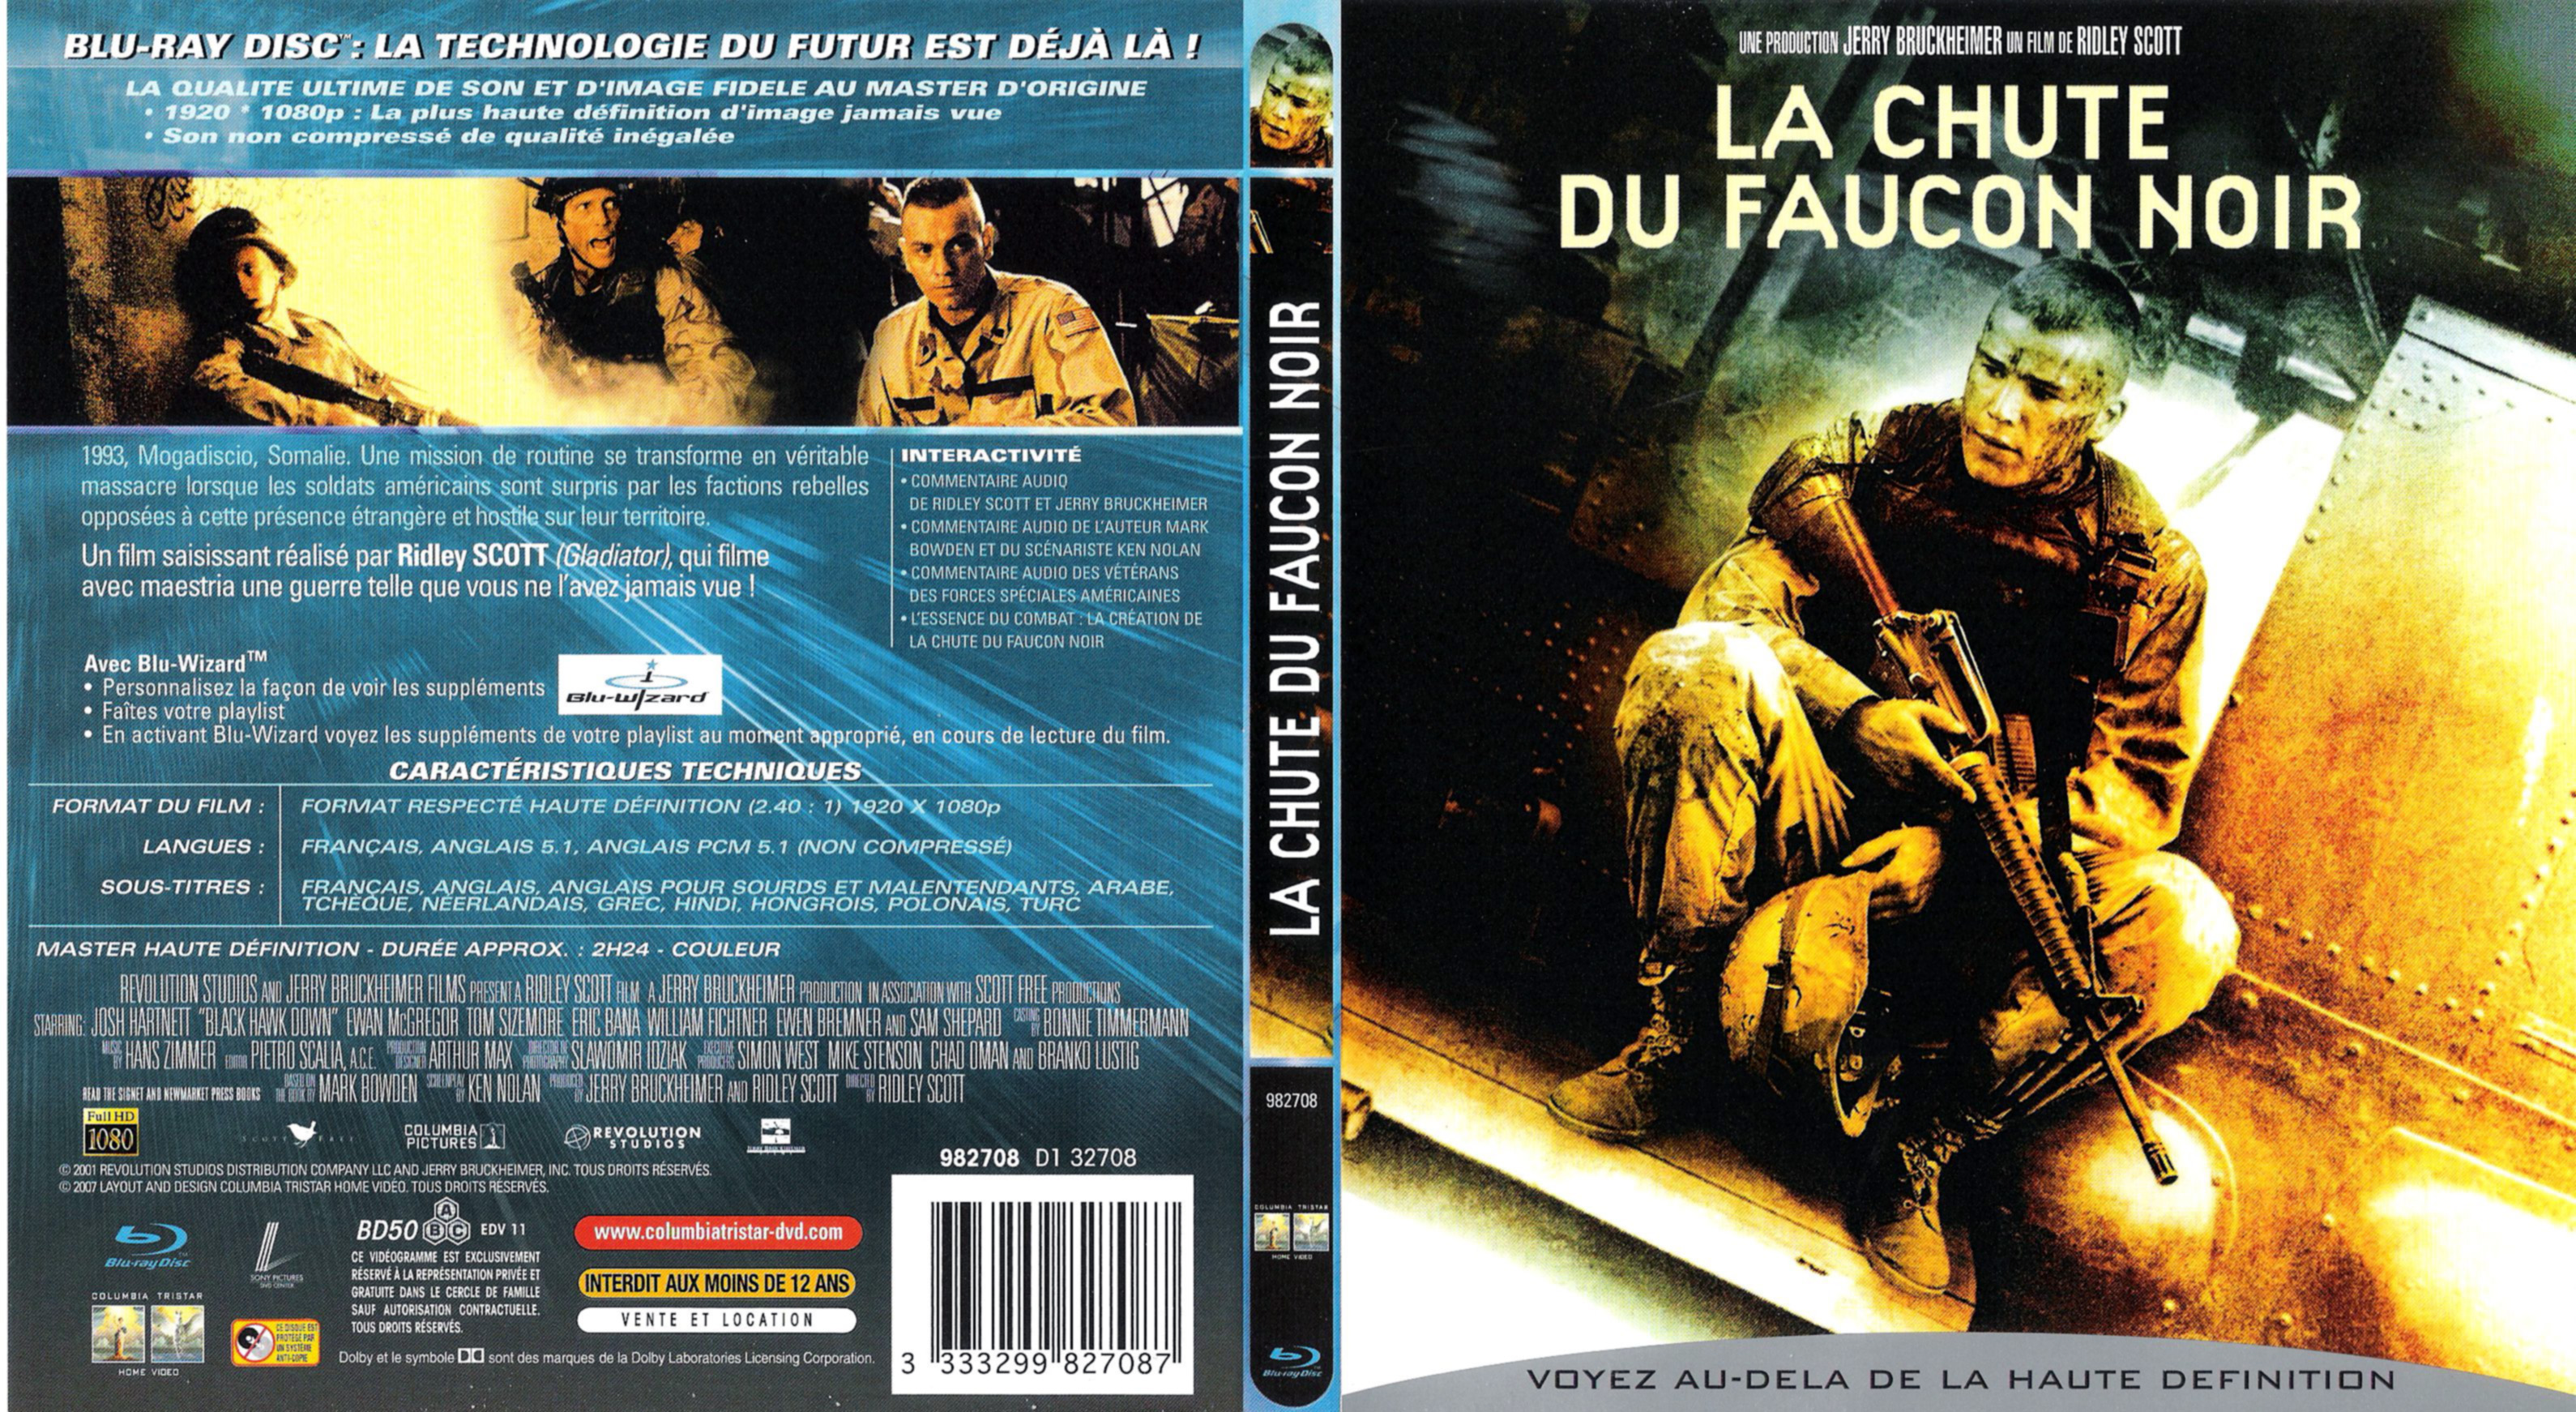 Jaquette DVD La chute du faucon noir (BLU-RAY) v2